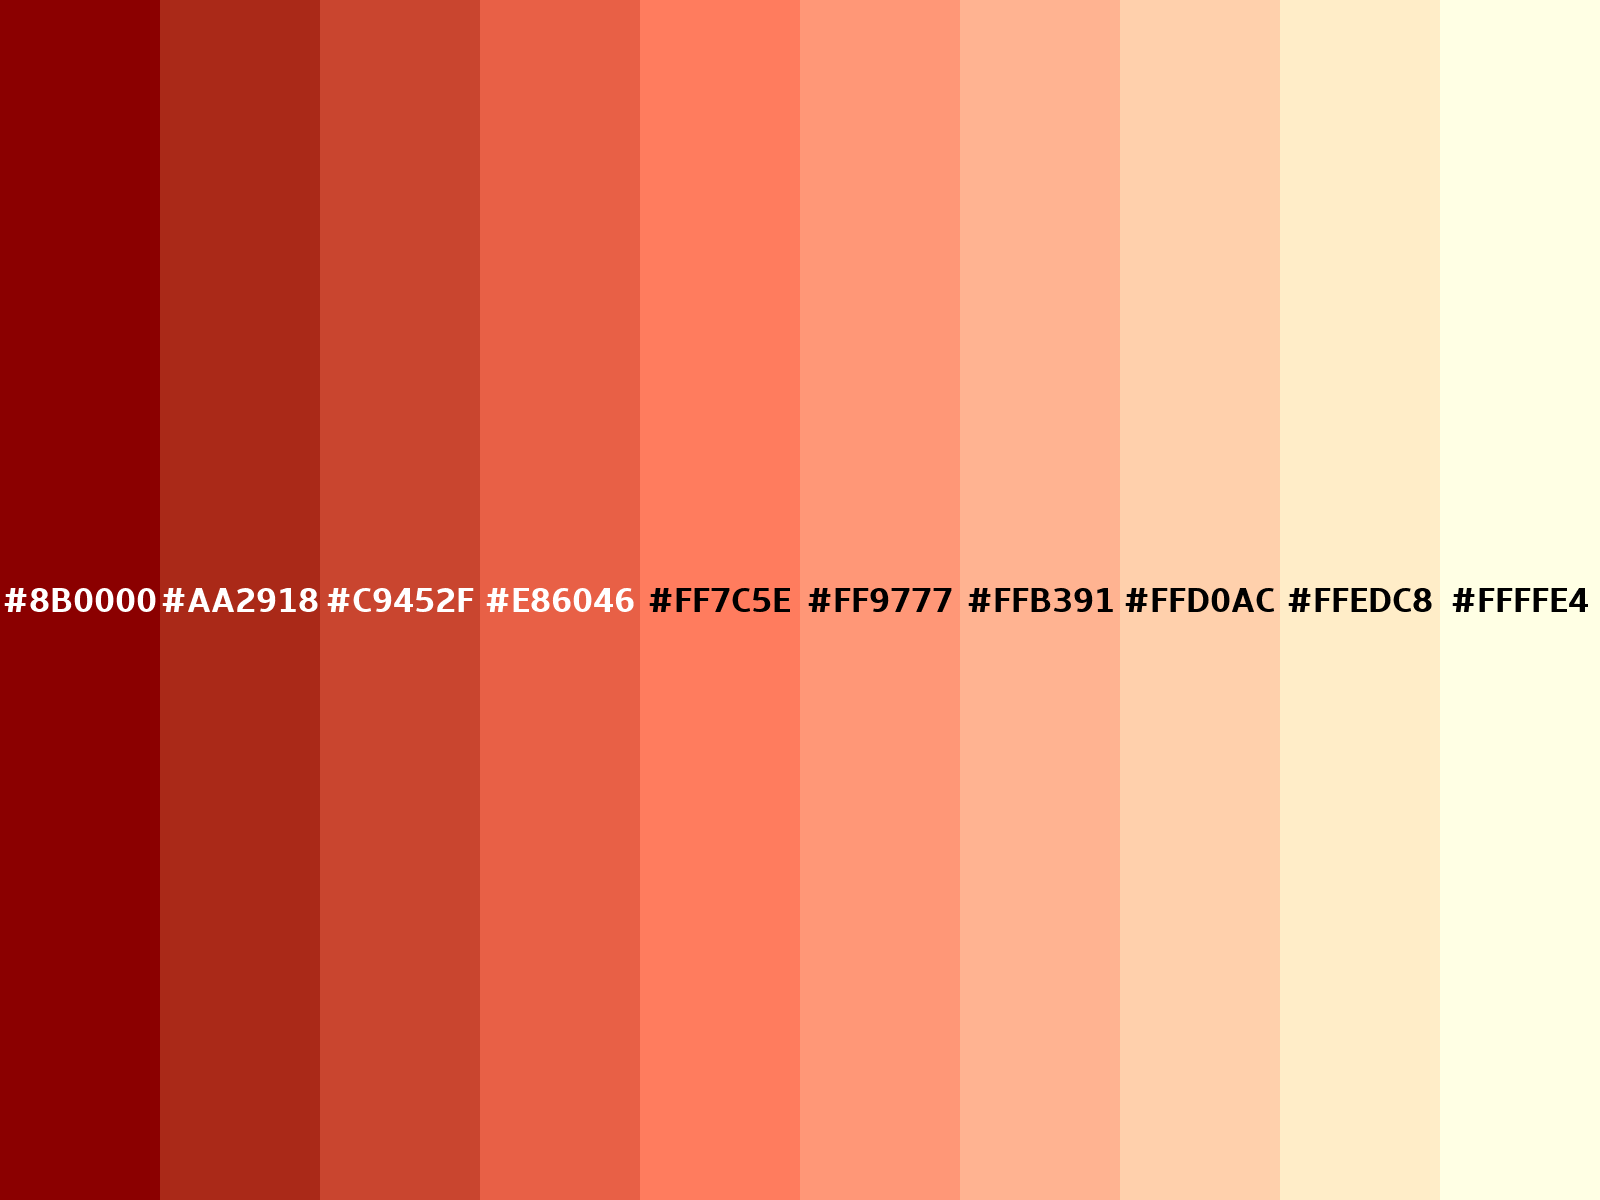 3B8DBD Hex Color, RGB: 59, 141, 189